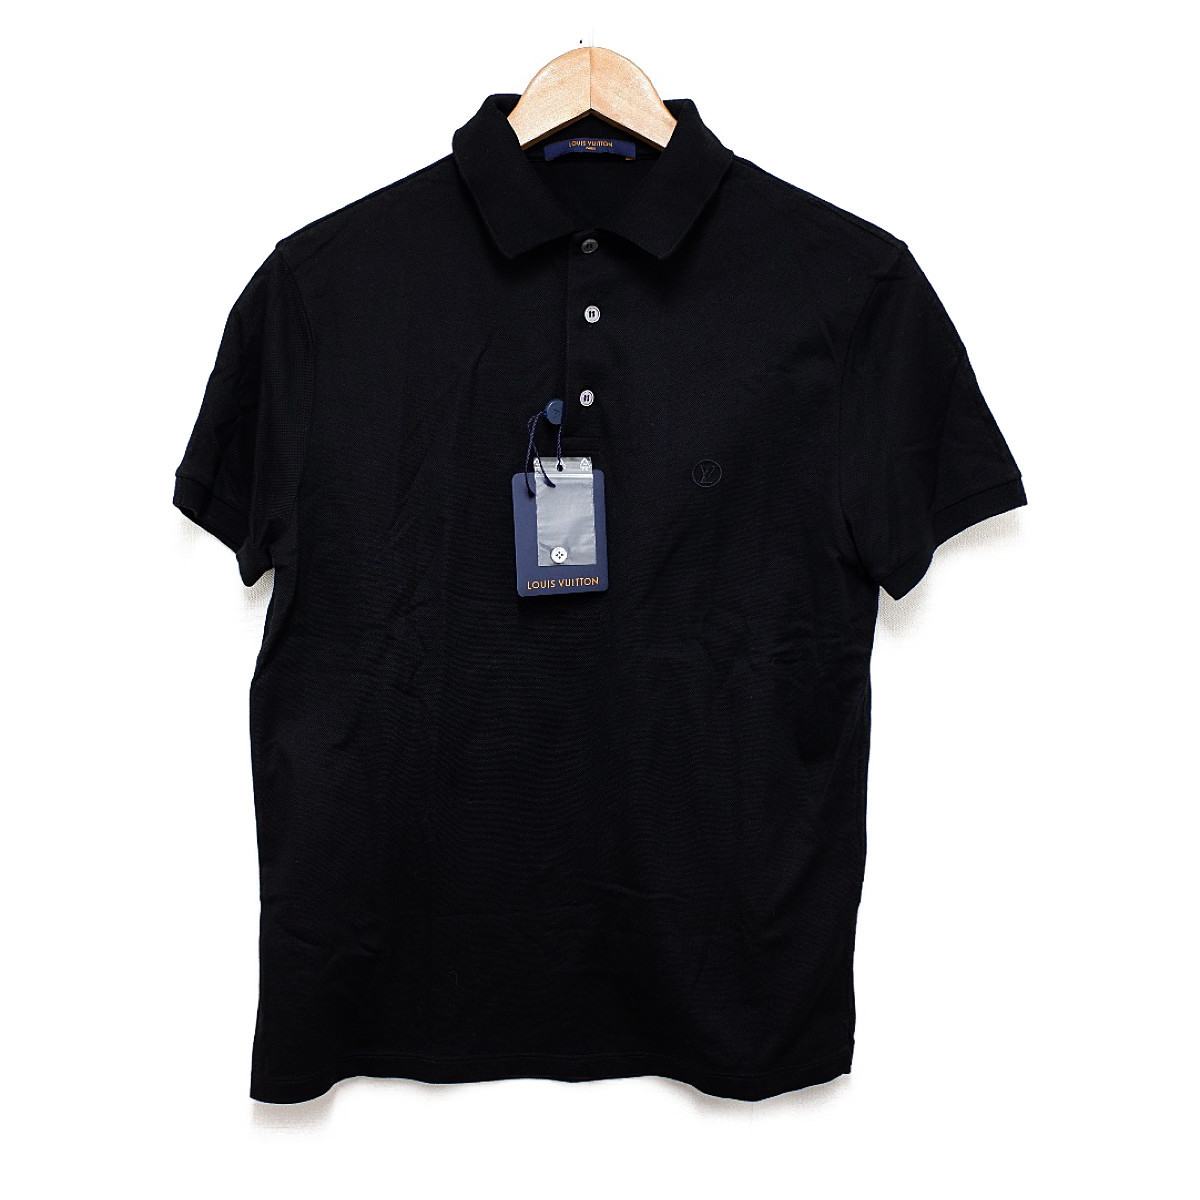 ルイヴィトンの20年製 ブラック ロゴ刺繍 コットン素材 半袖ポロシャツの買取実績です。